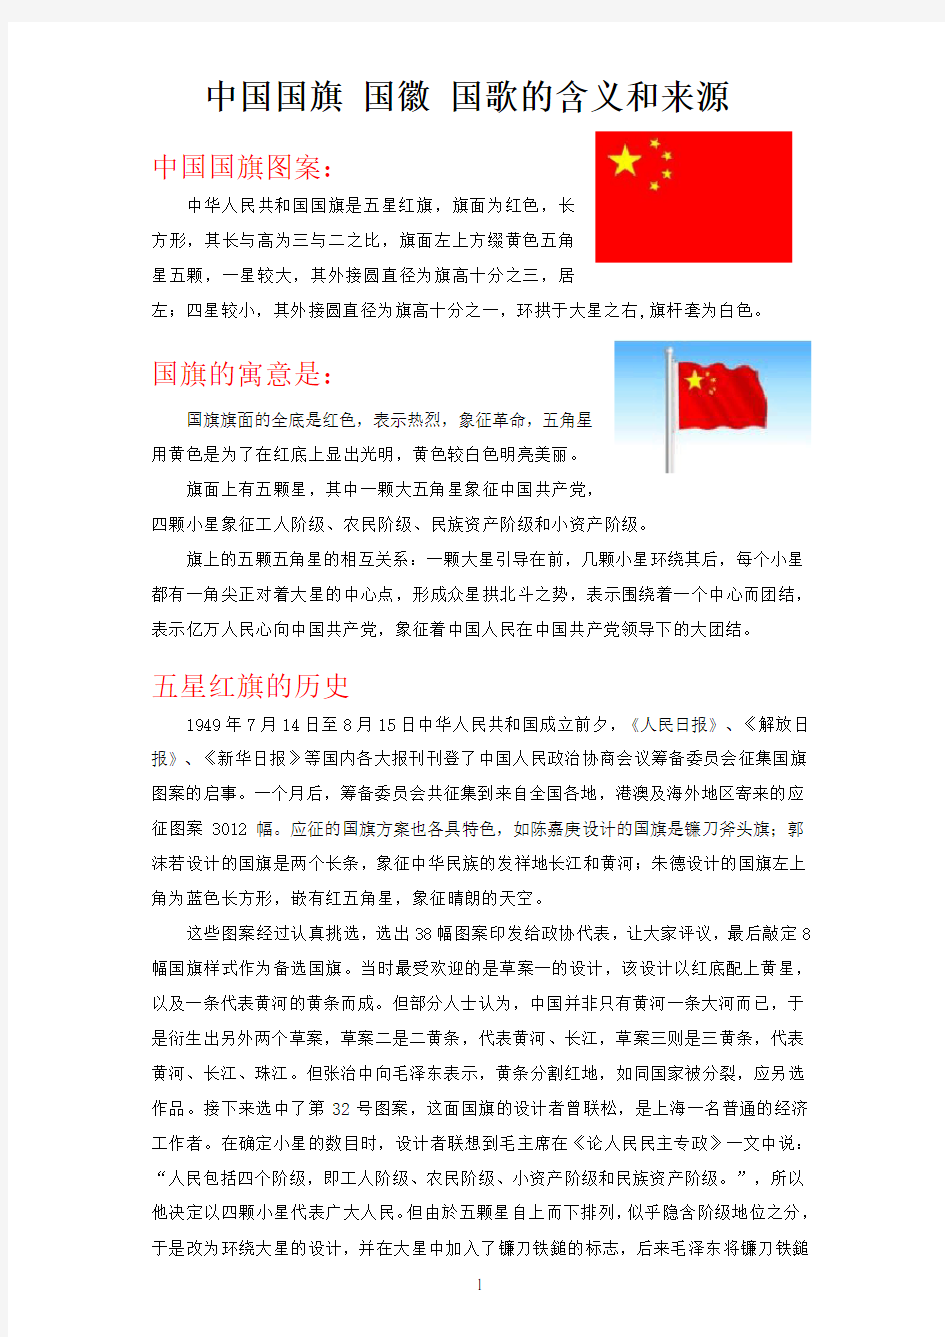 中国国旗 国徽 国歌的含义和来源